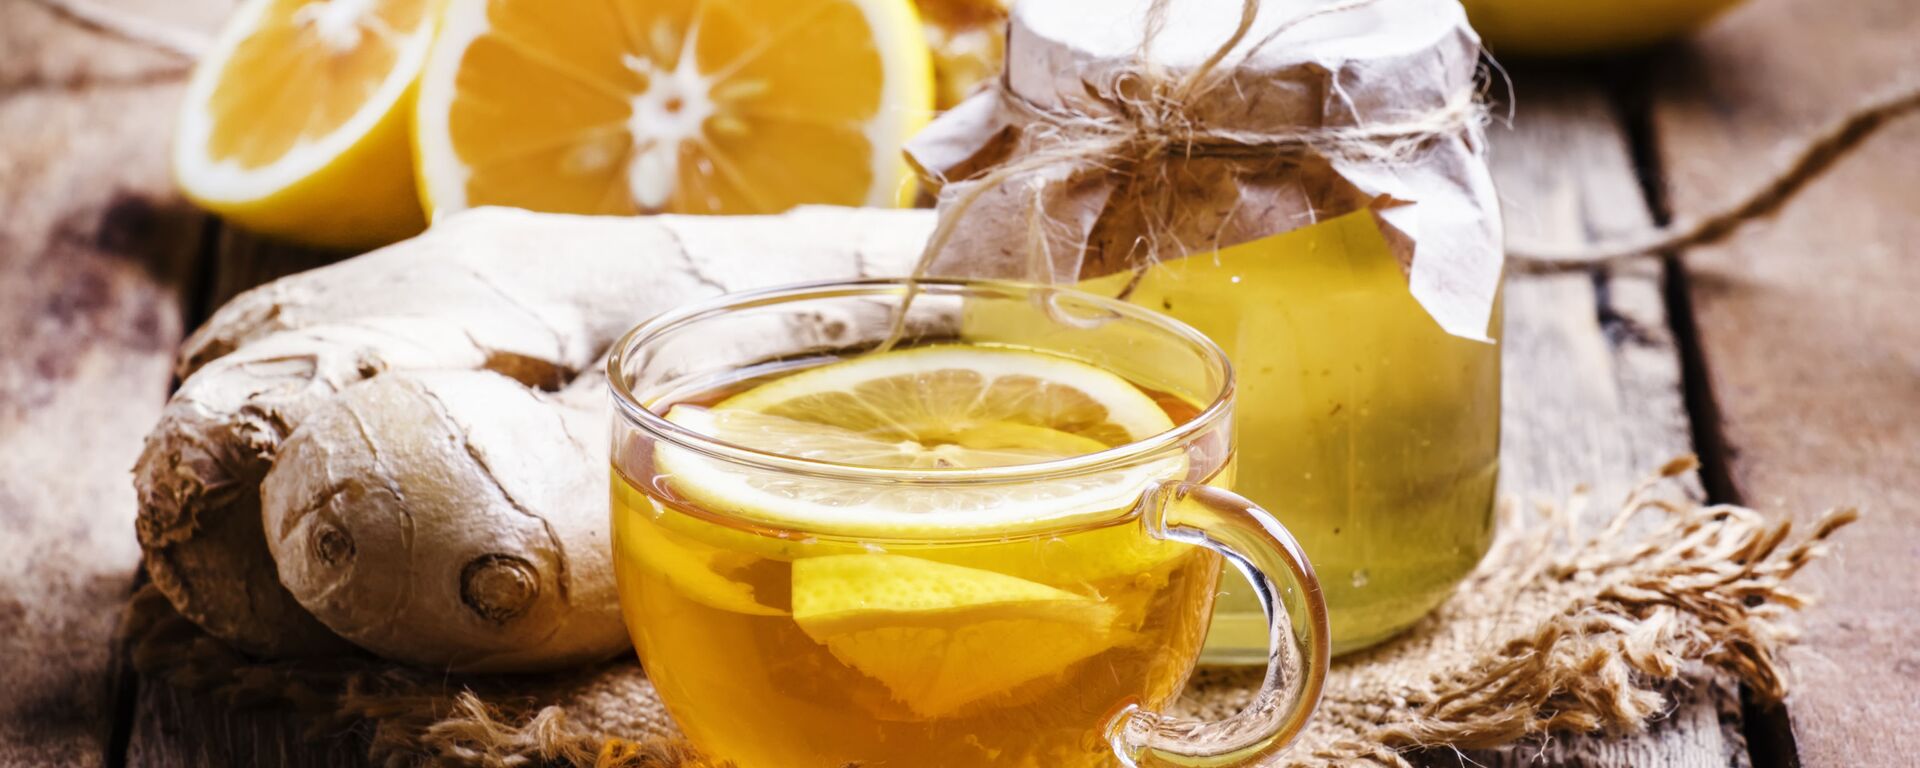 الشاي الأسود مع الليمون والعسل - سبوتنيك عربي, 1920, 03.10.2020